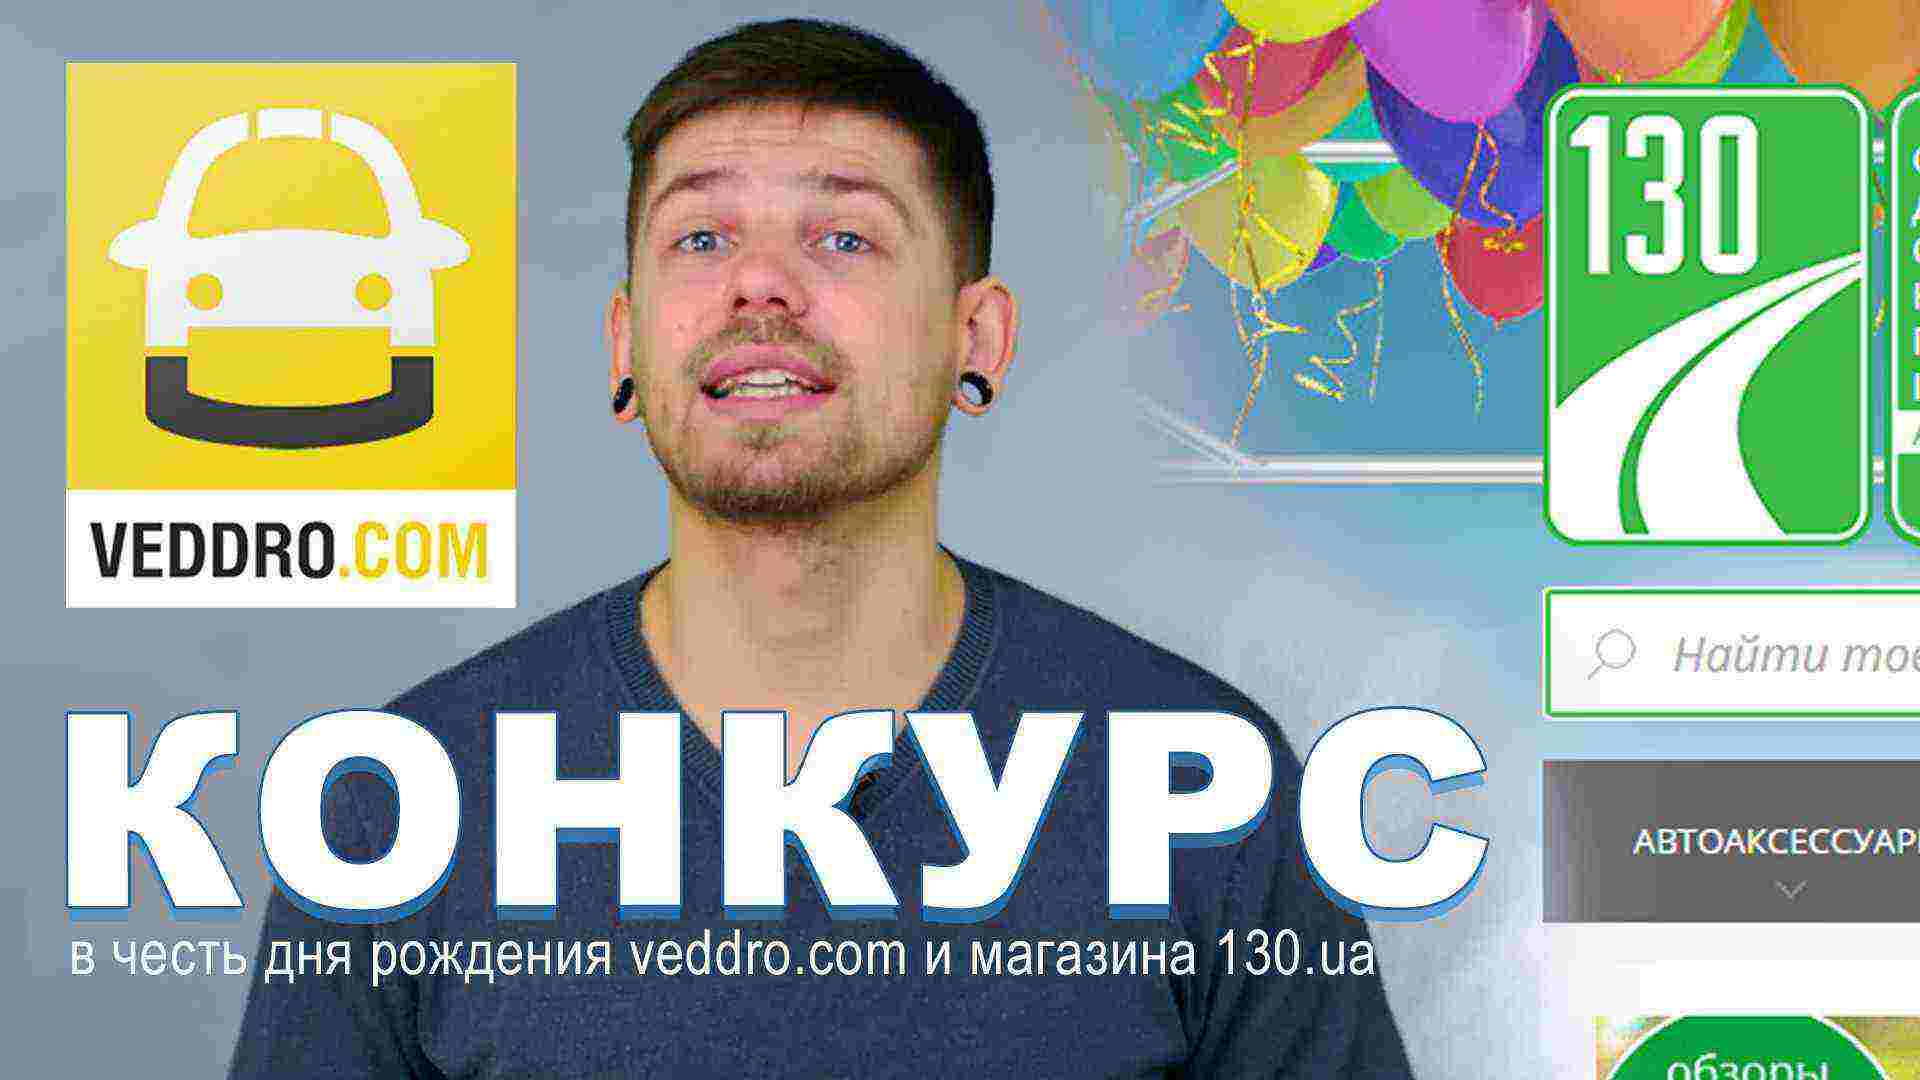 Конкурс в честь дня рождения 130.ua и Veddro.com